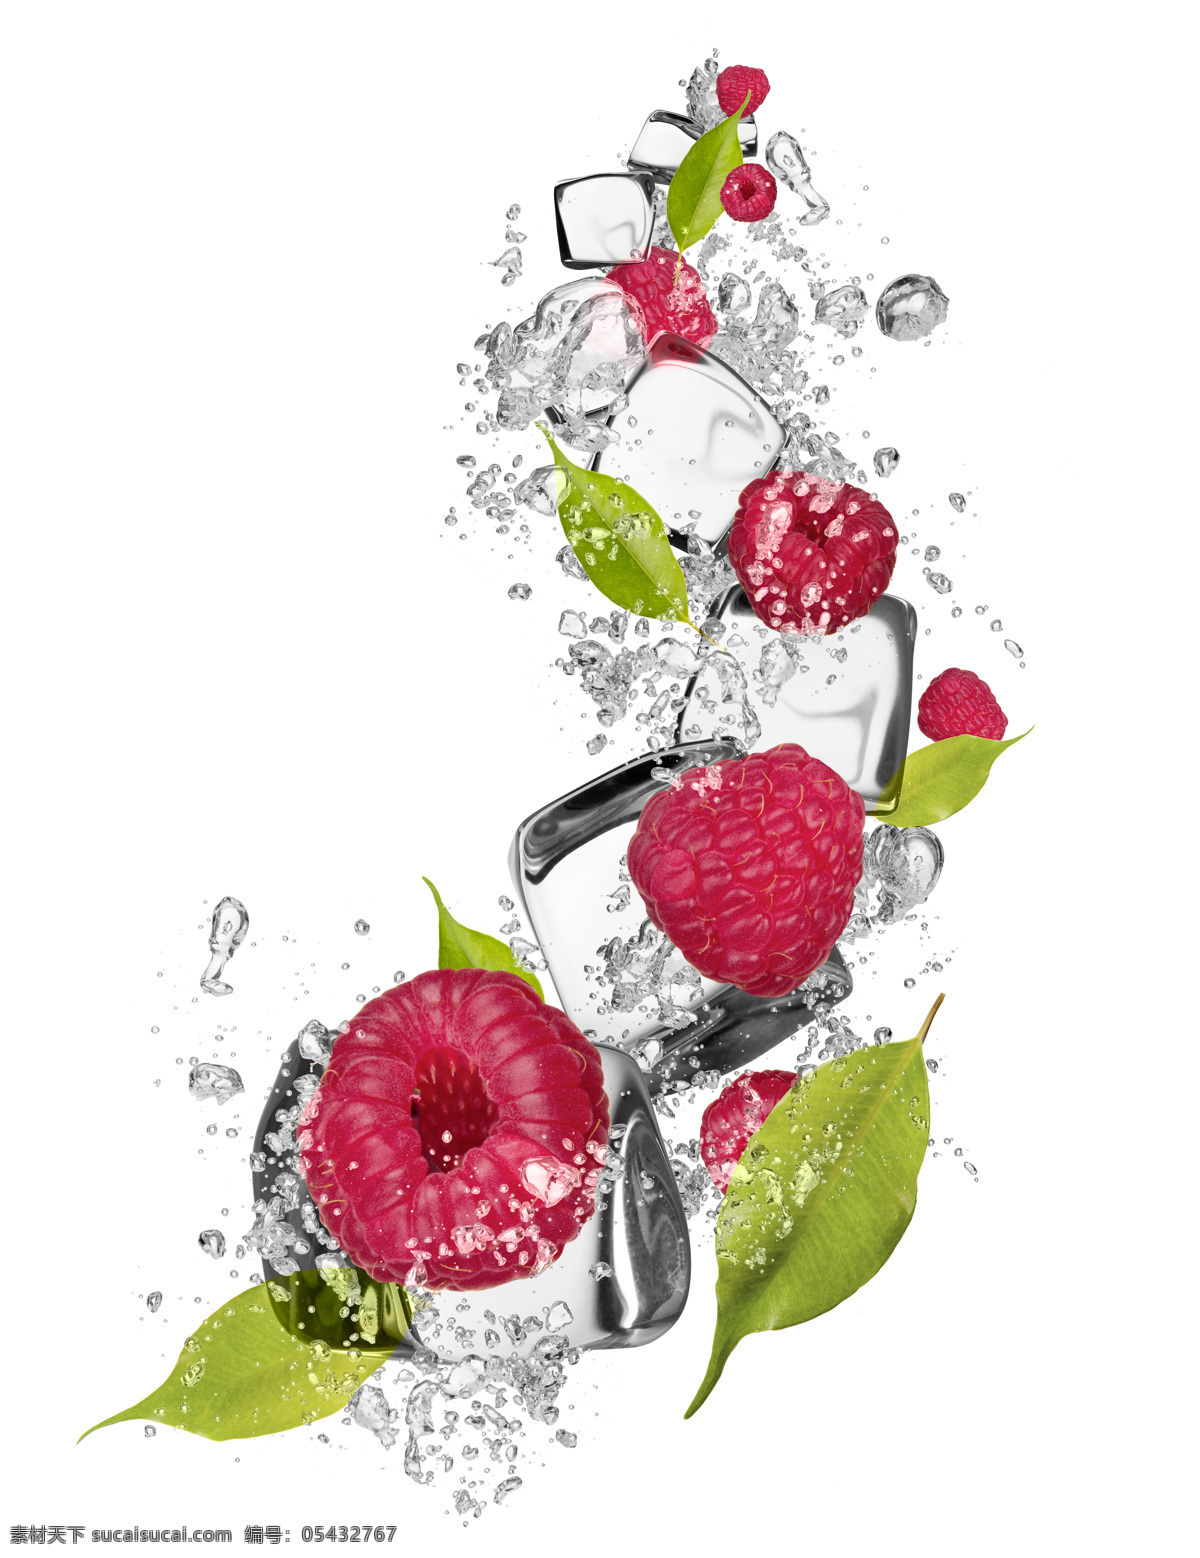 动感 水花 冰块 水果 覆盆子 新鲜水果 动感水花 掉 入 水中 气泡 水珠 绿叶 水果图片 餐饮美食